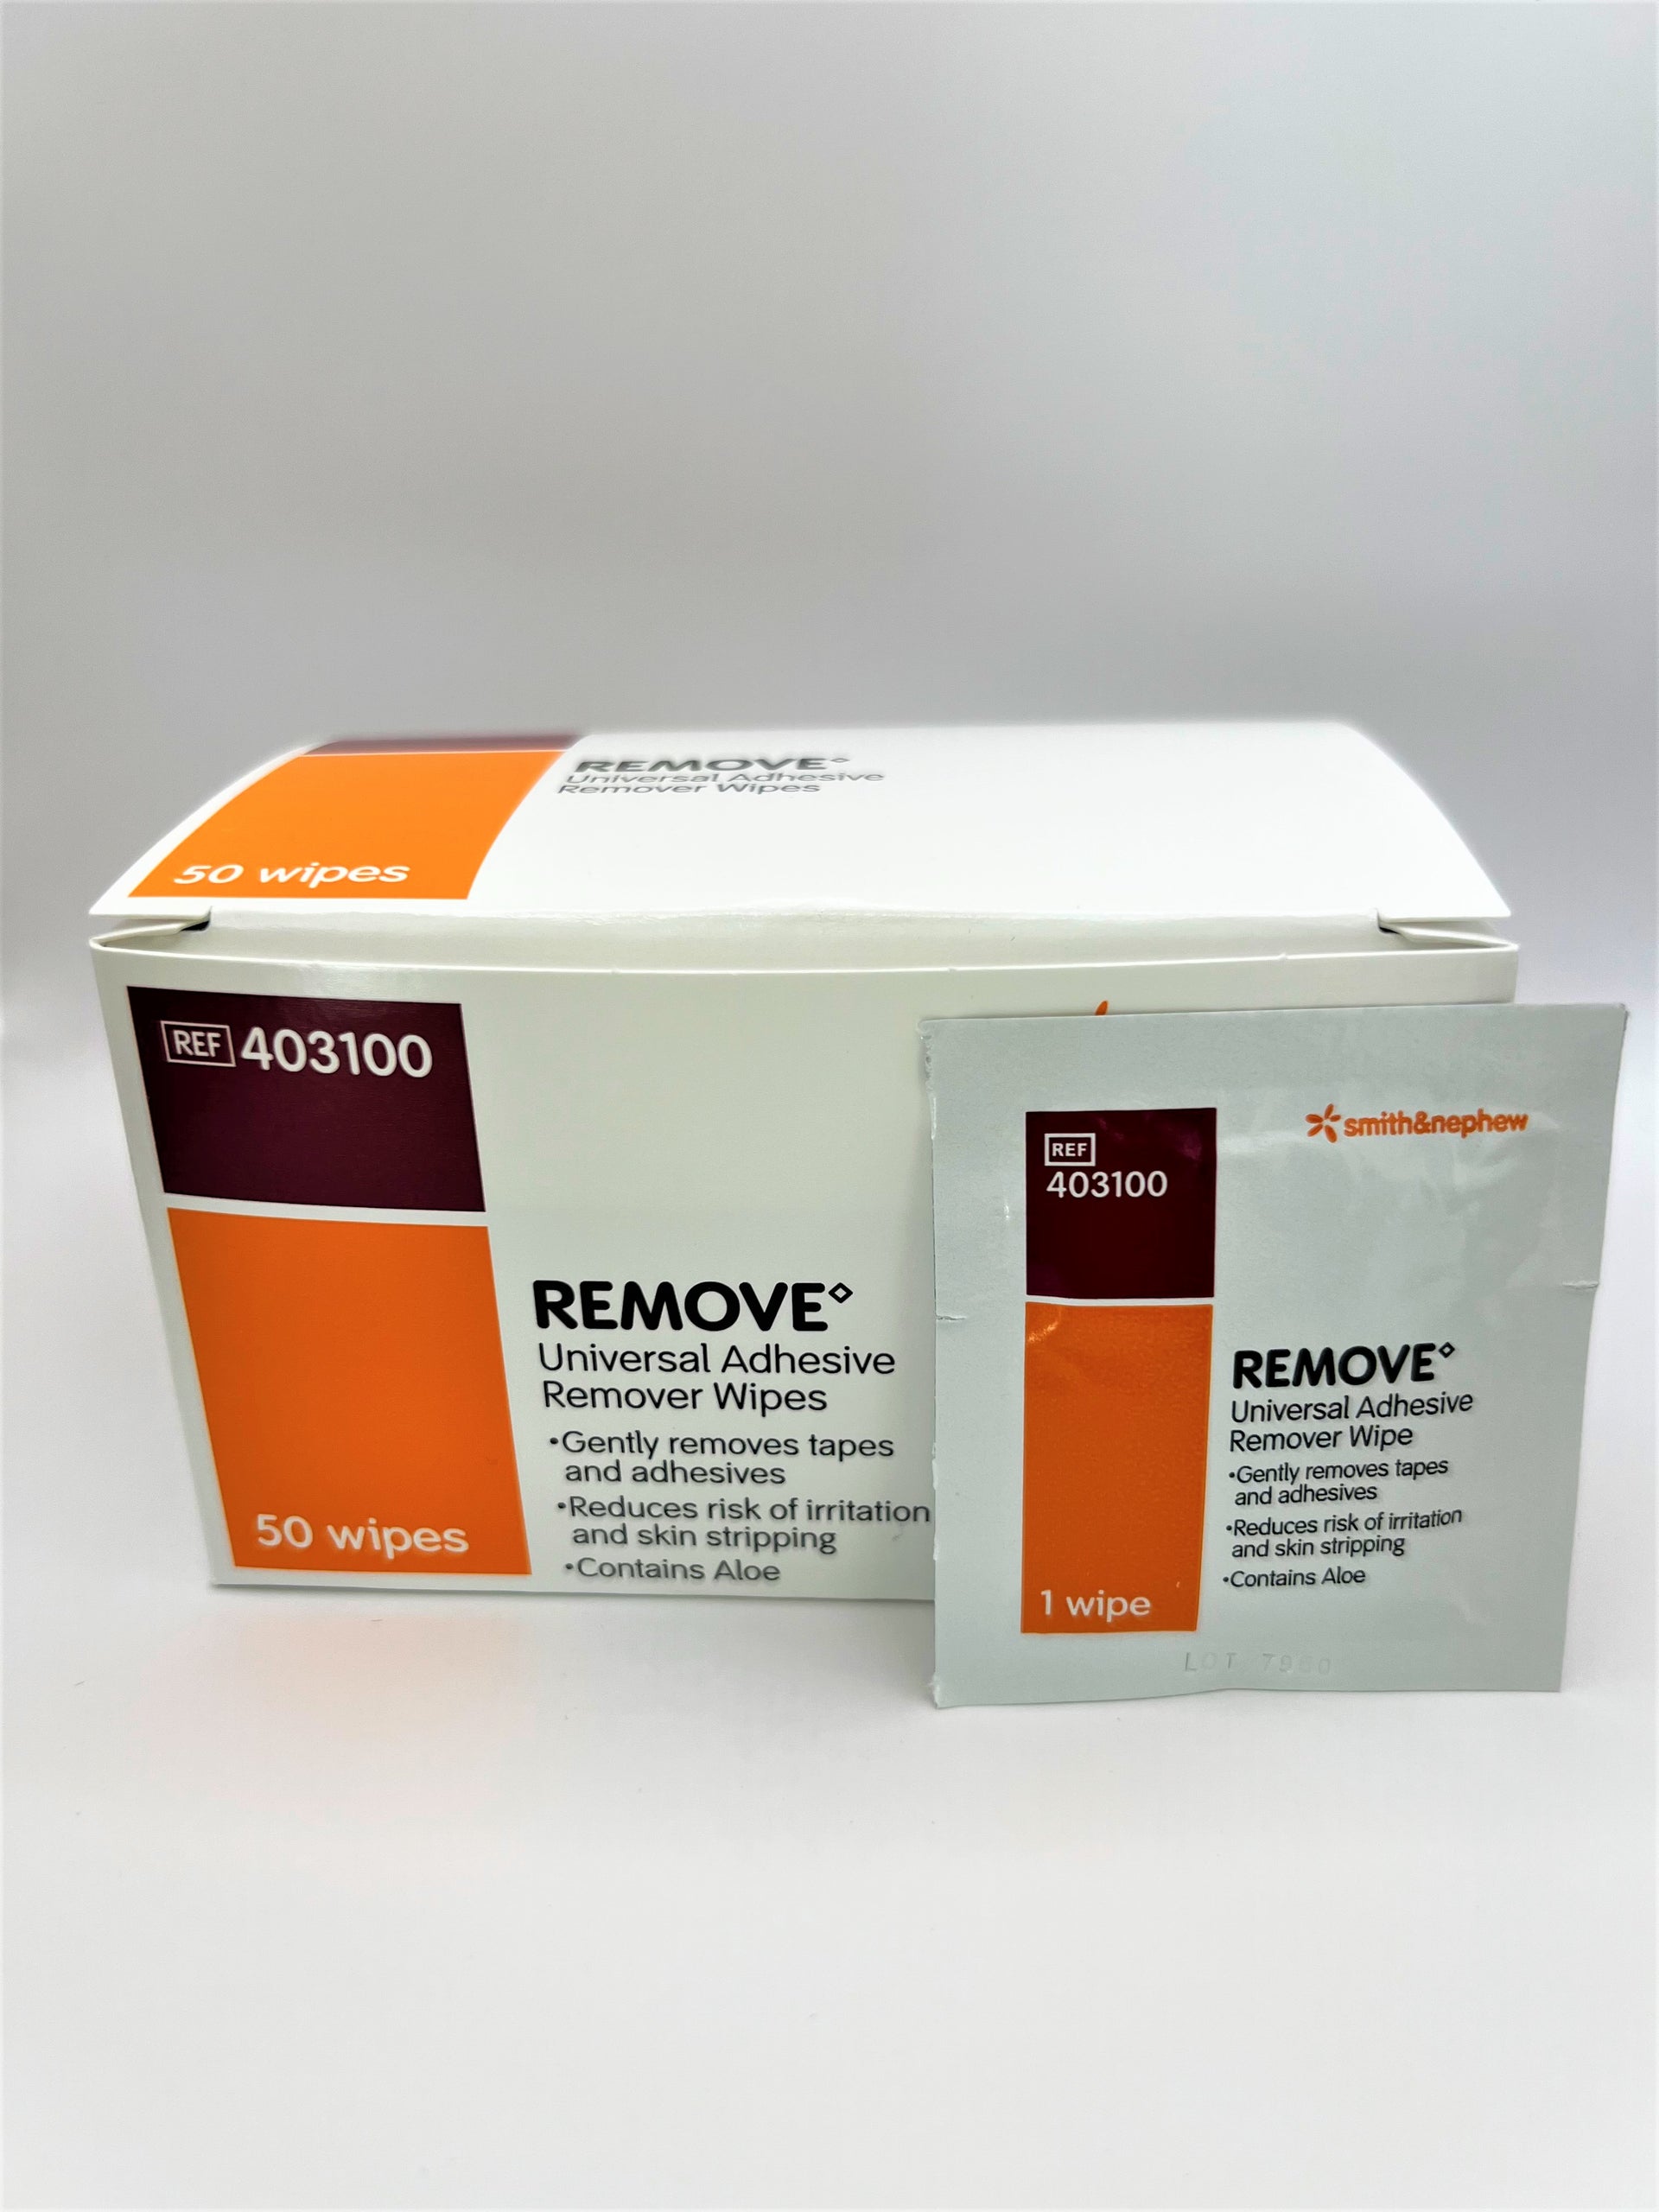 Smith & Nephew UniSolve Adhesive Remover